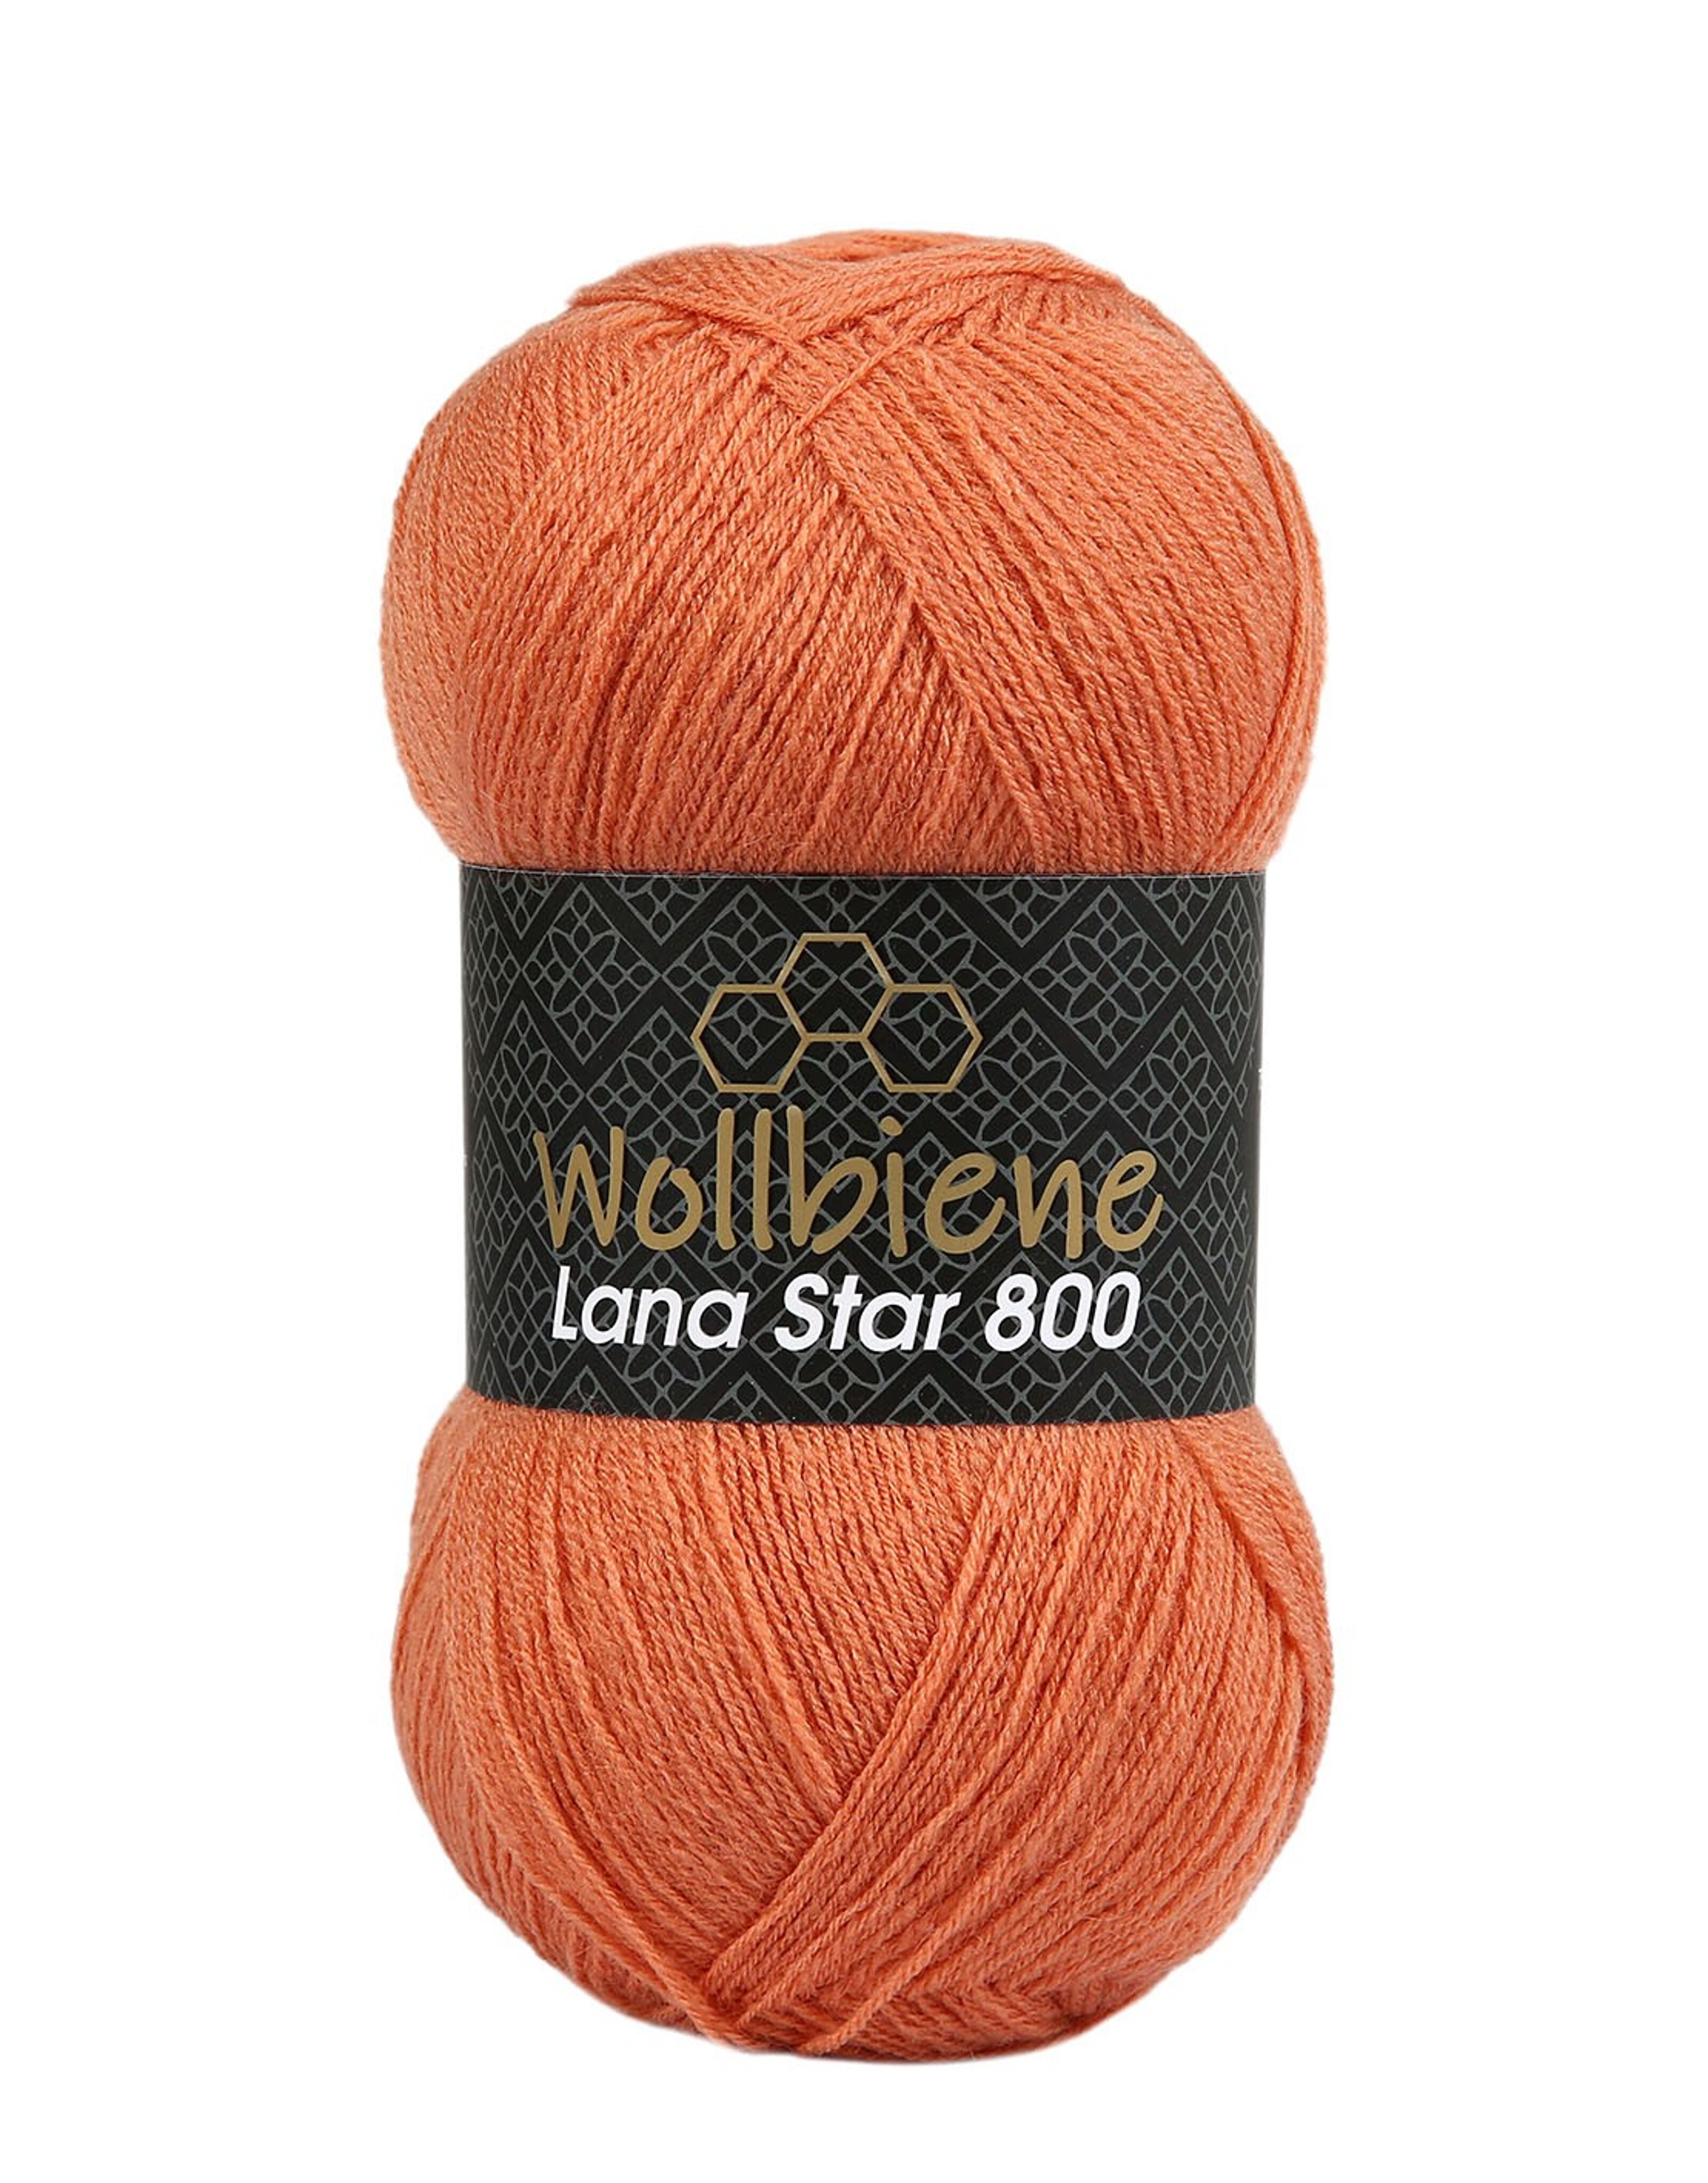 Achat Laine d'abeille Lana Star 800 rose foncé 13 25% laine couleurs unies  en gros